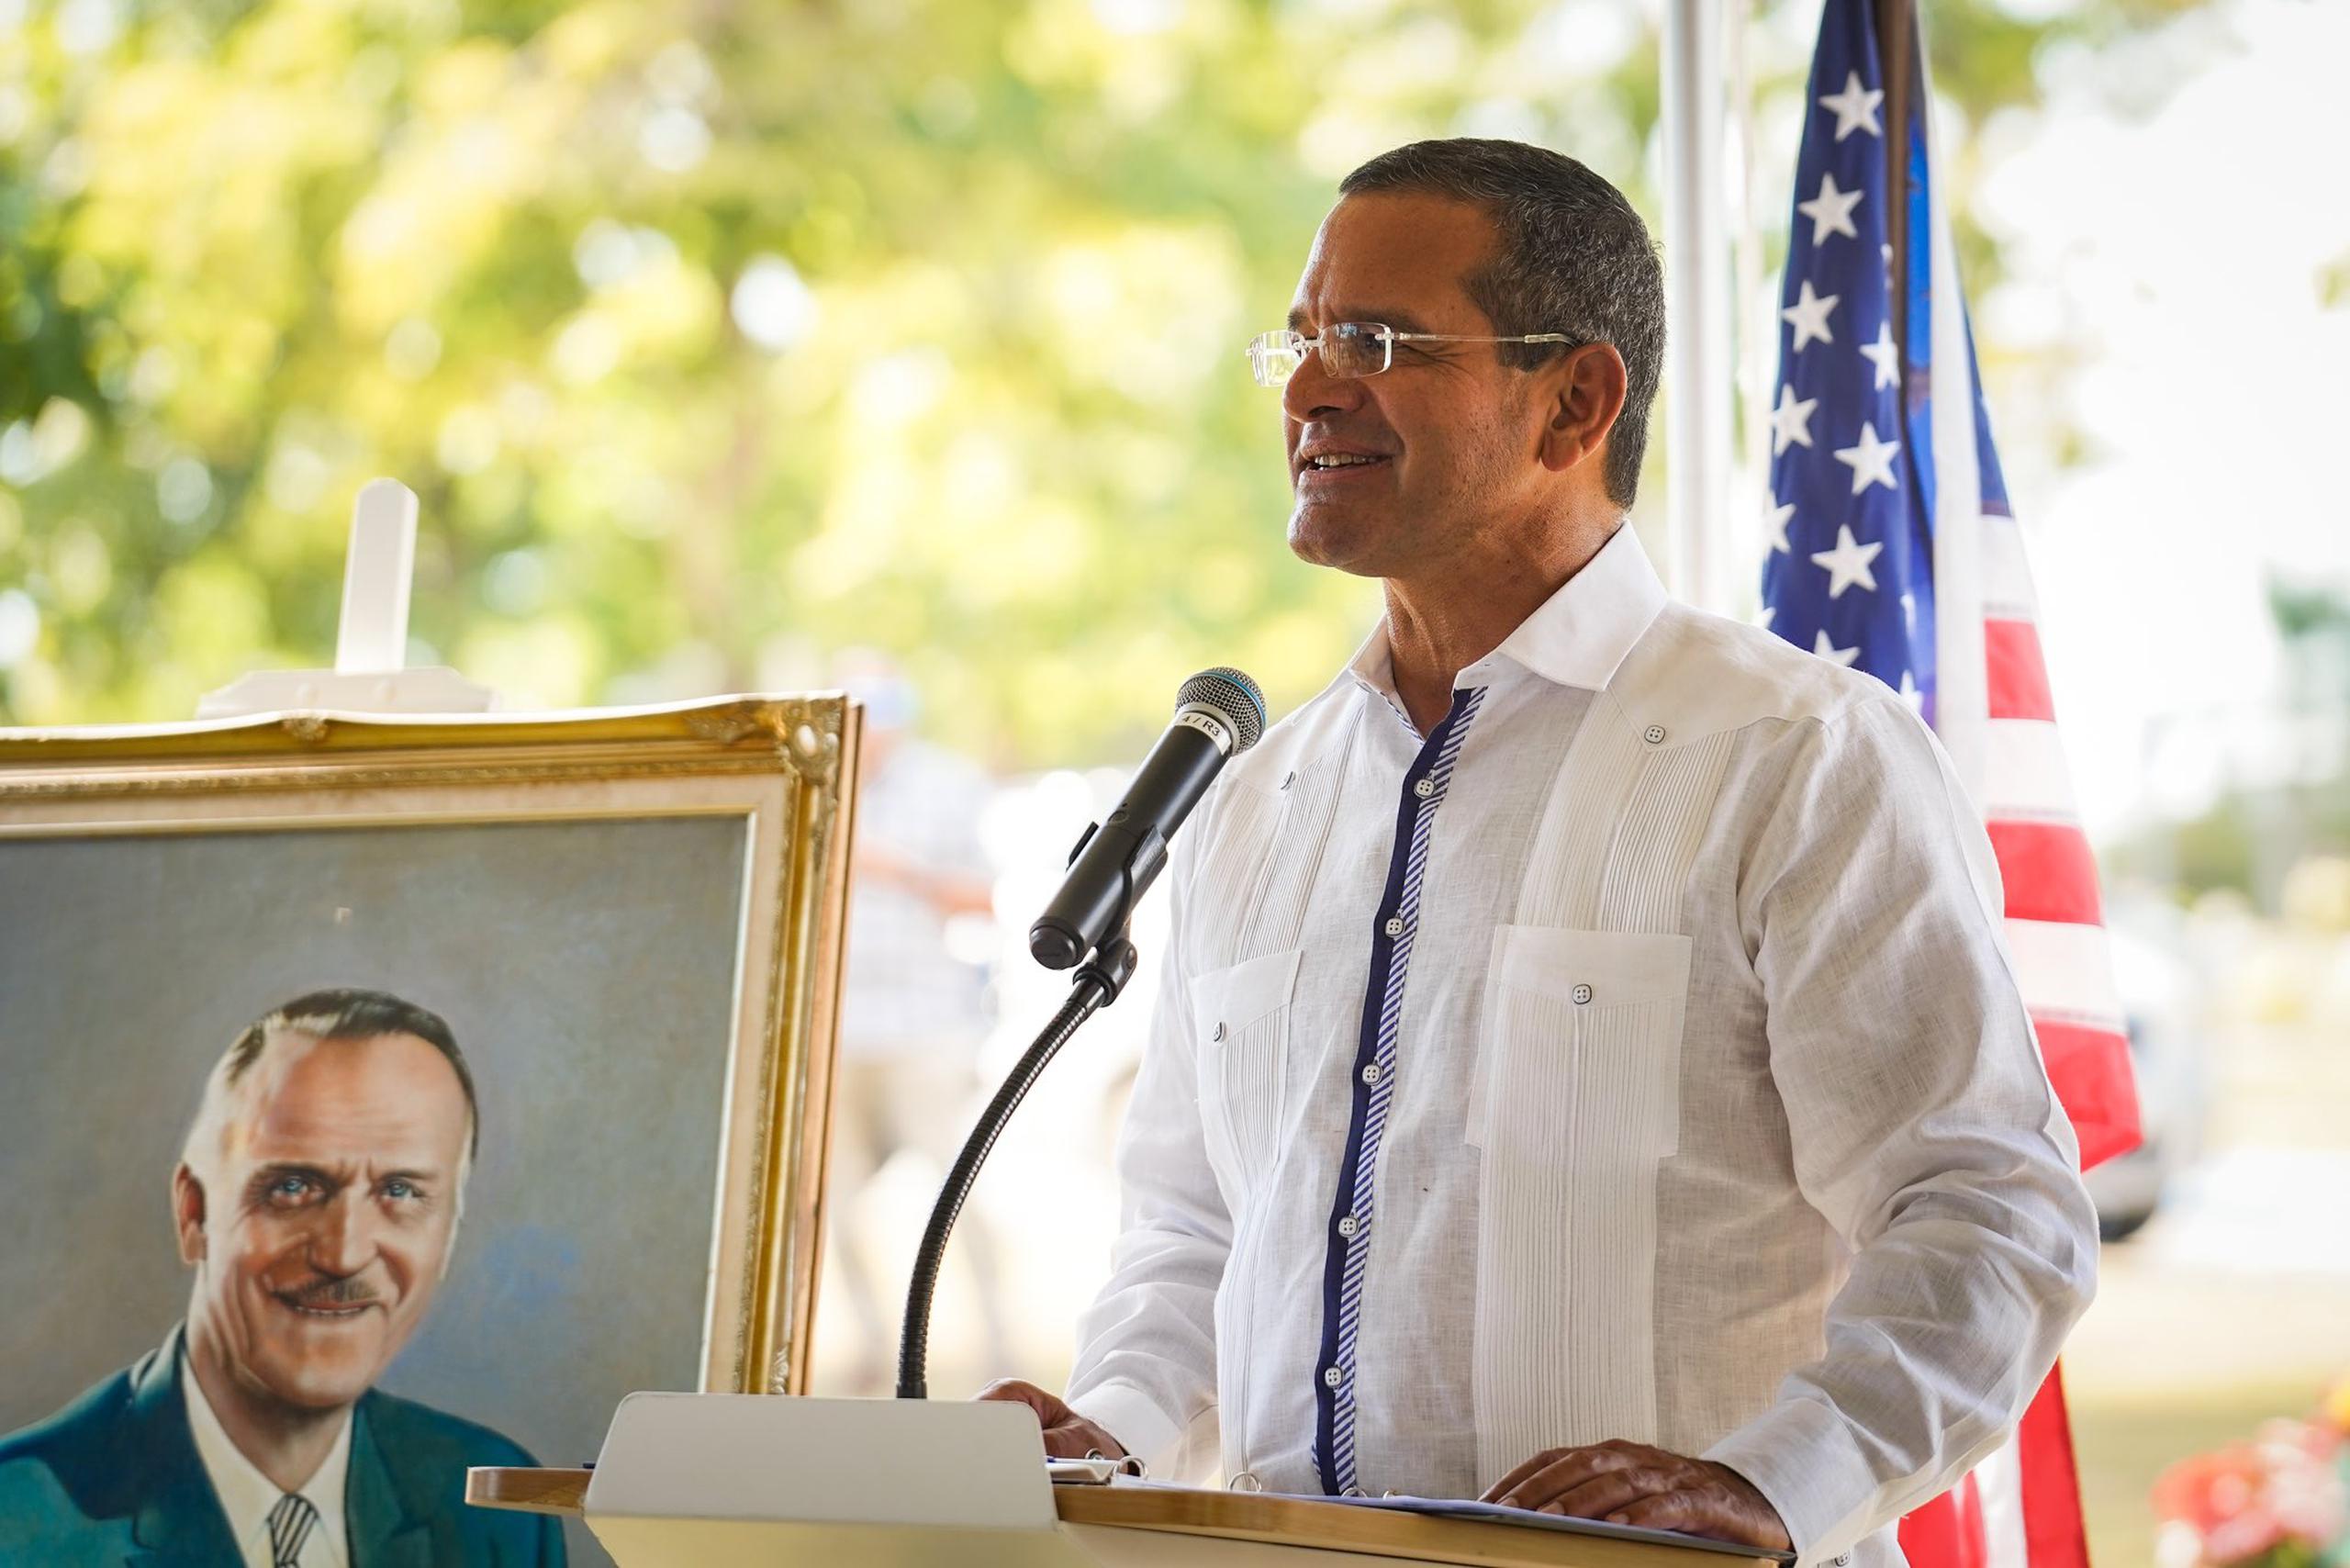 El gobernador dijo sentirse honrado por ser parte de la ceremonia “para recordar y celebrar la vida de un gran prócer puertorriqueño”,